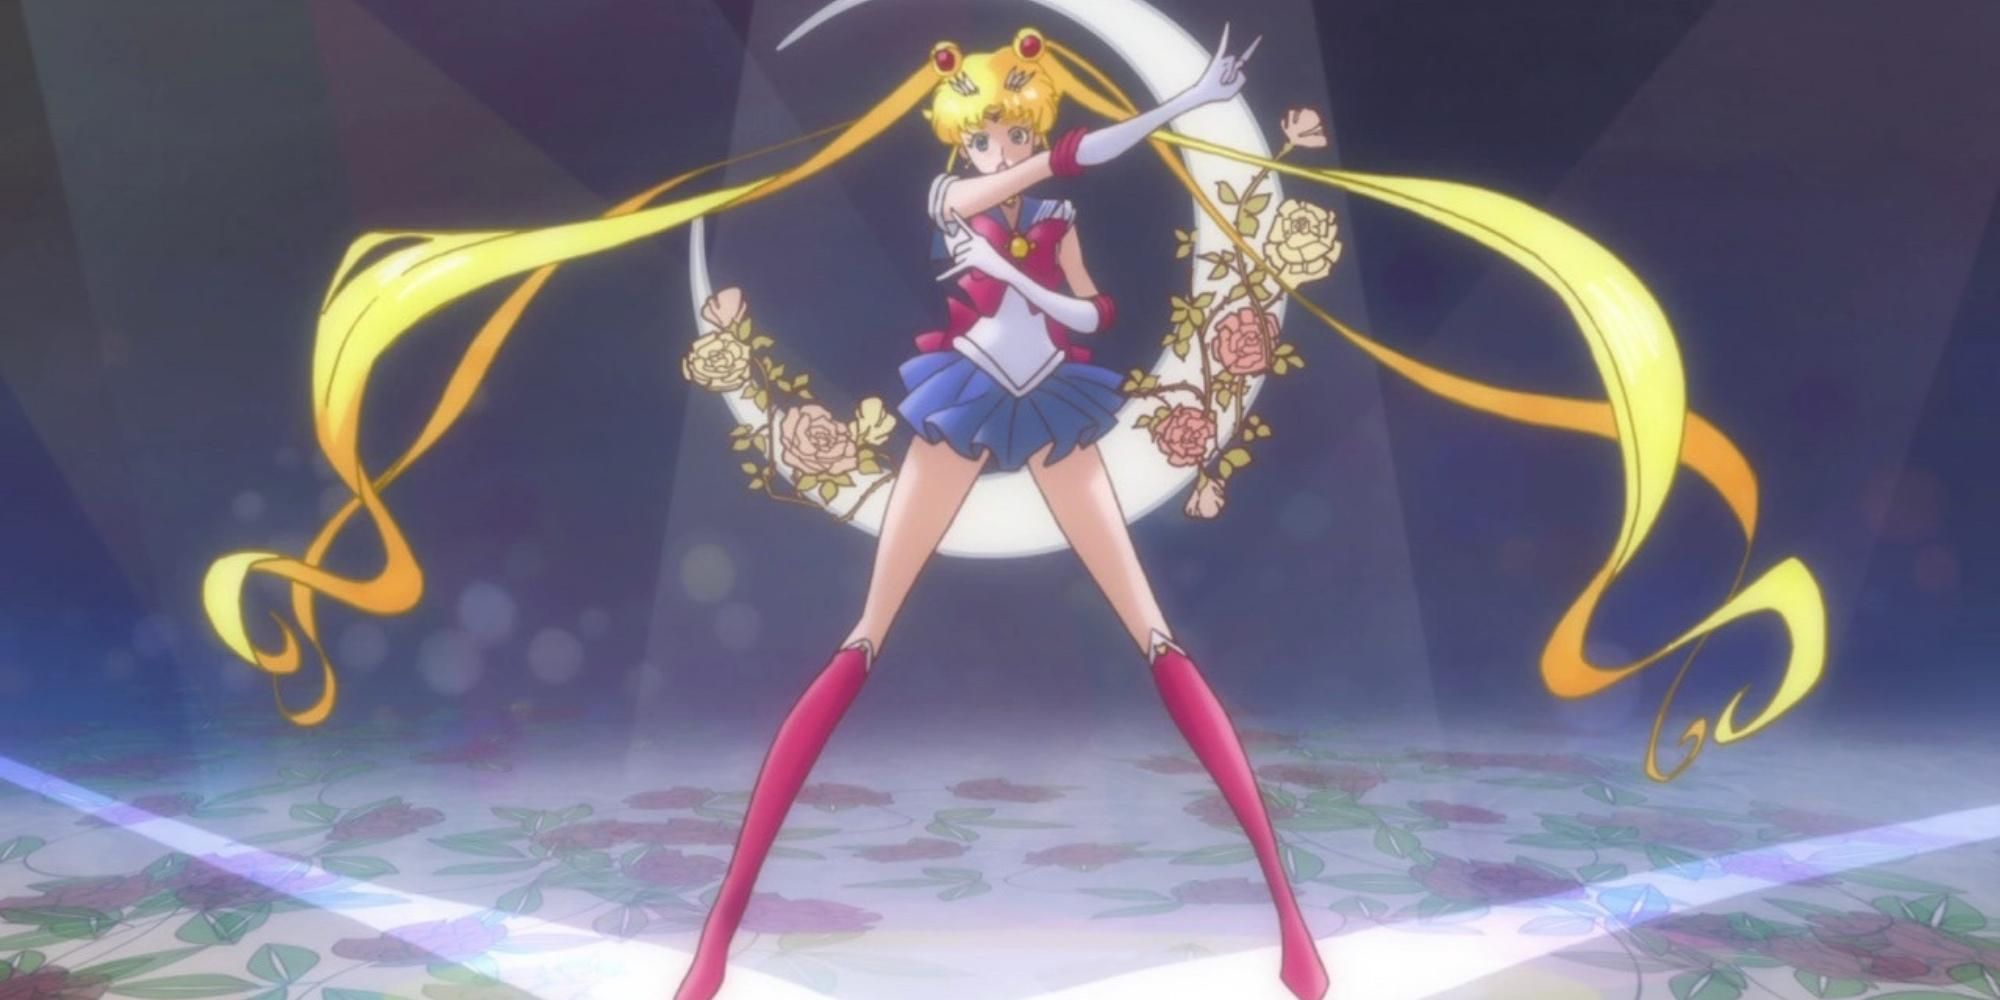 Usagi in Sailor Moon 